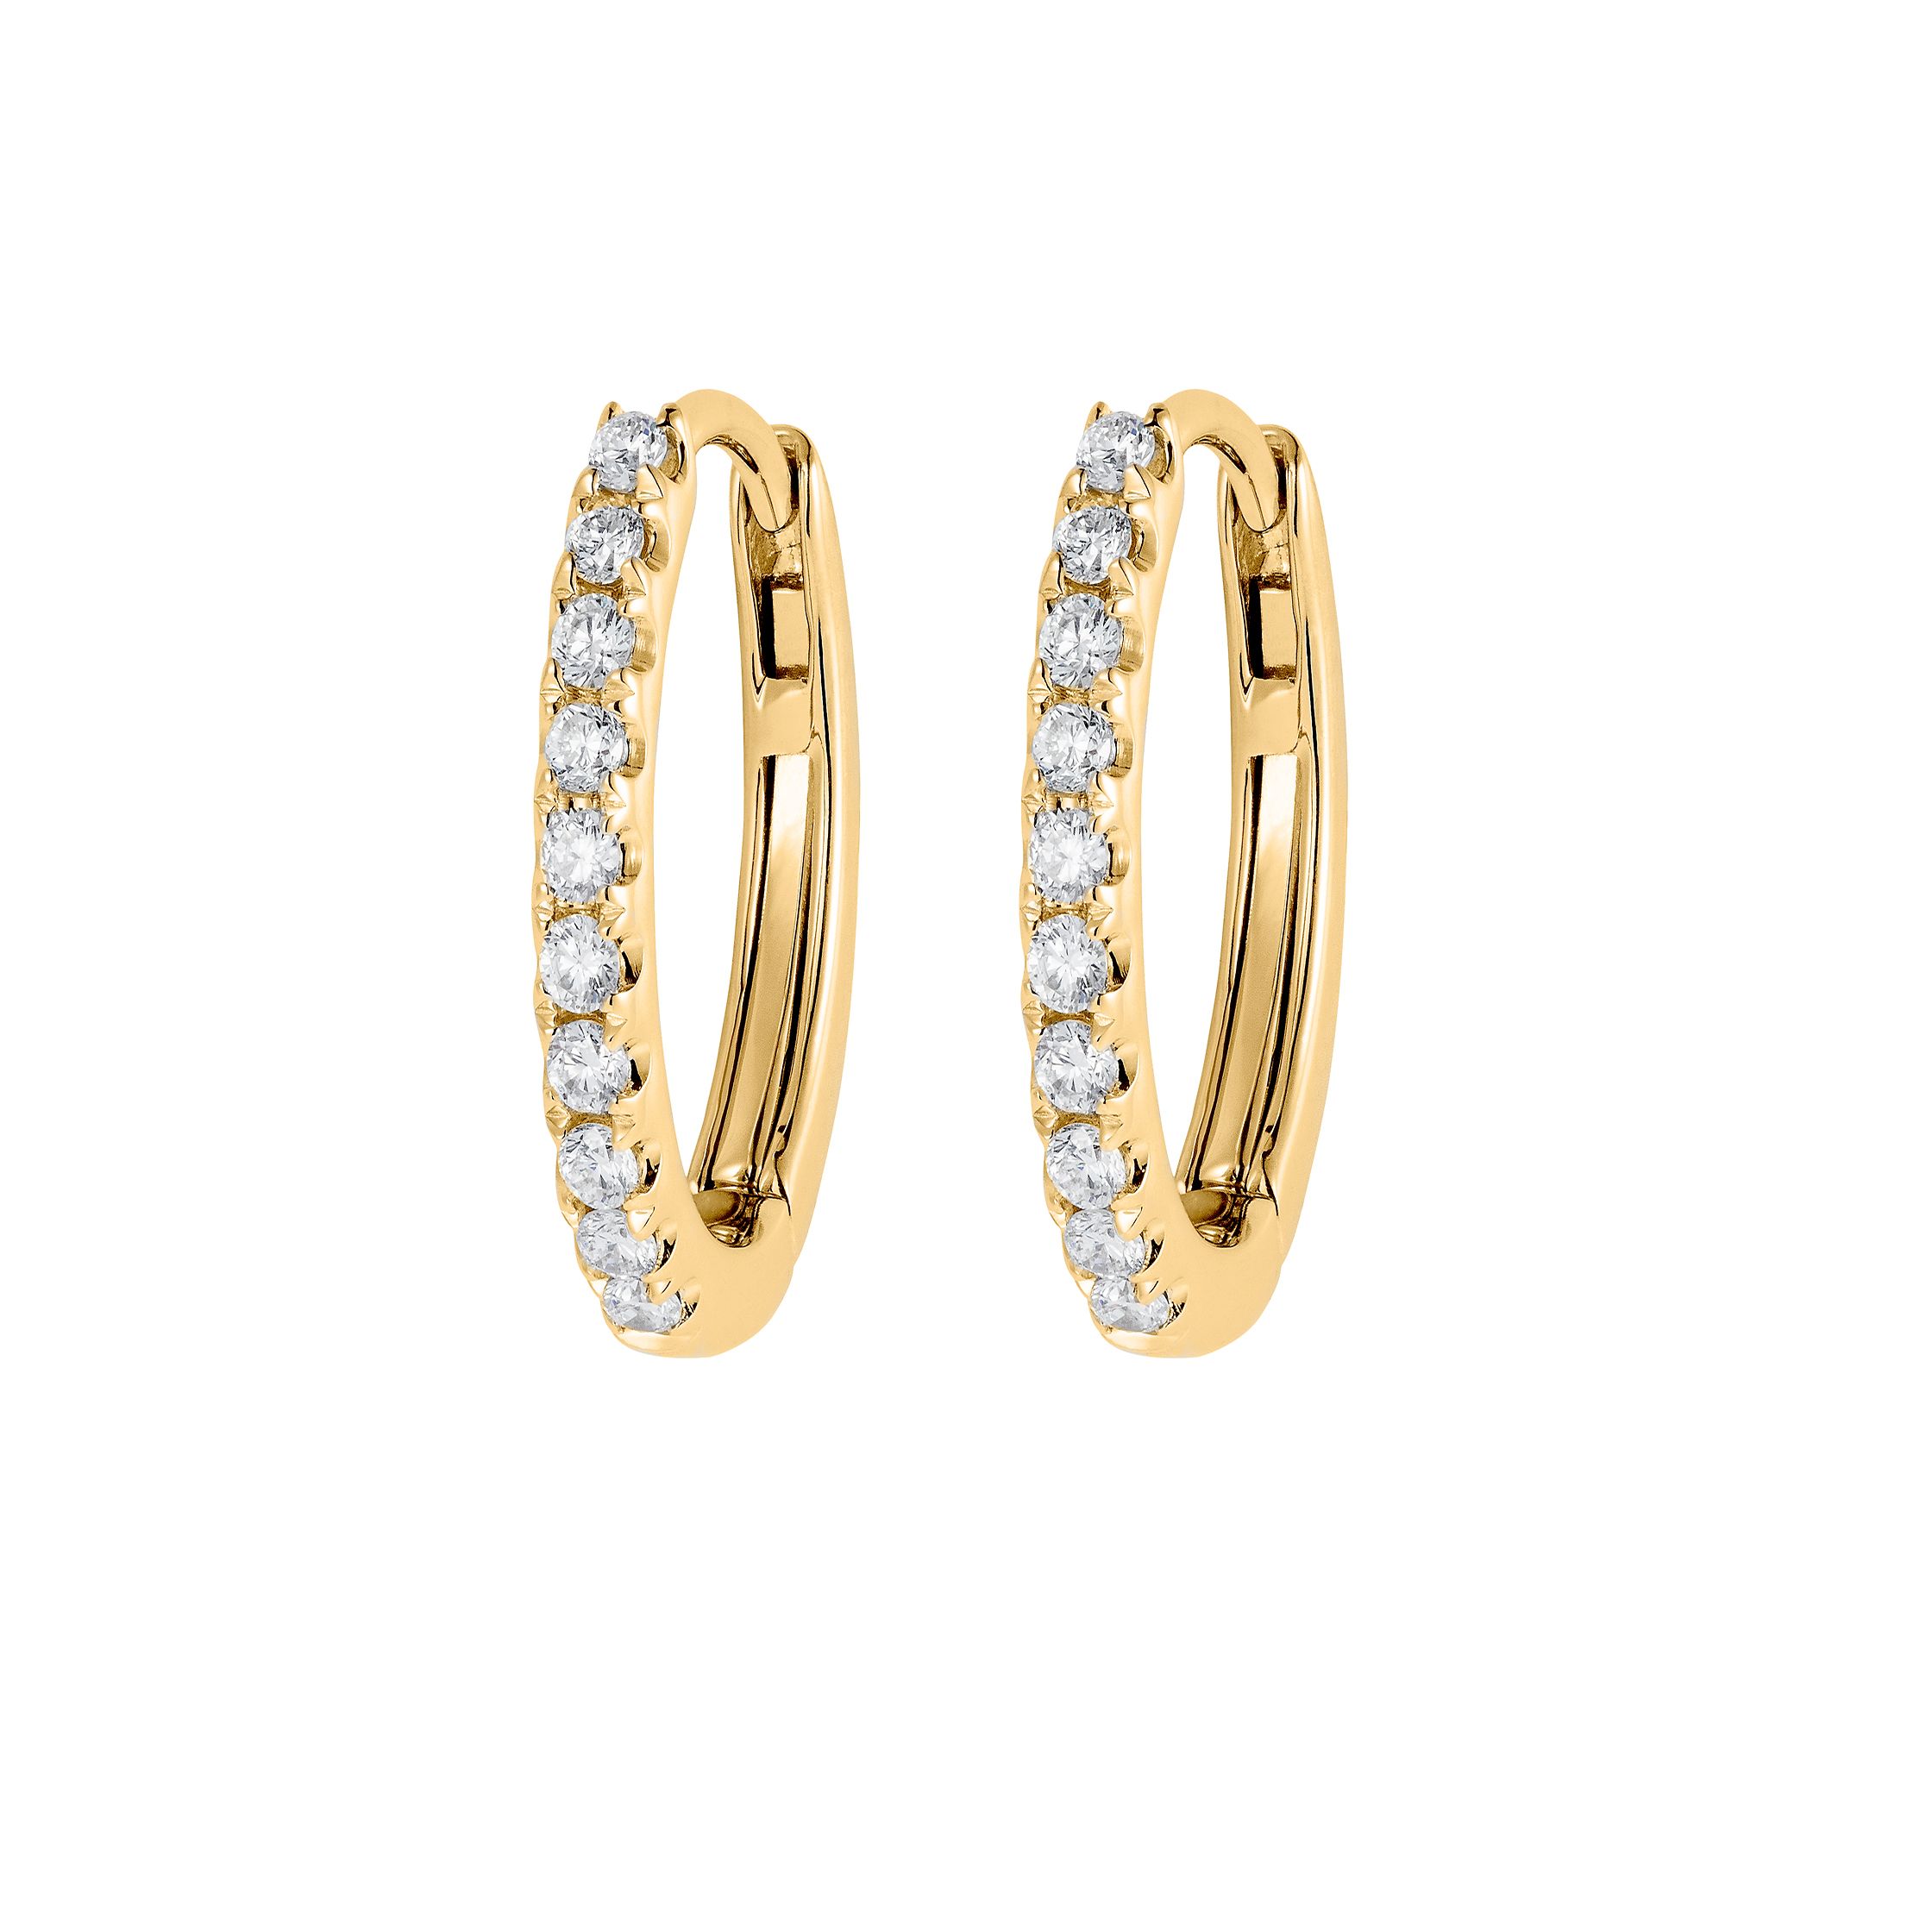 Cute Gold Earrings - Hammered Earrings - Round Earrings - Lulus